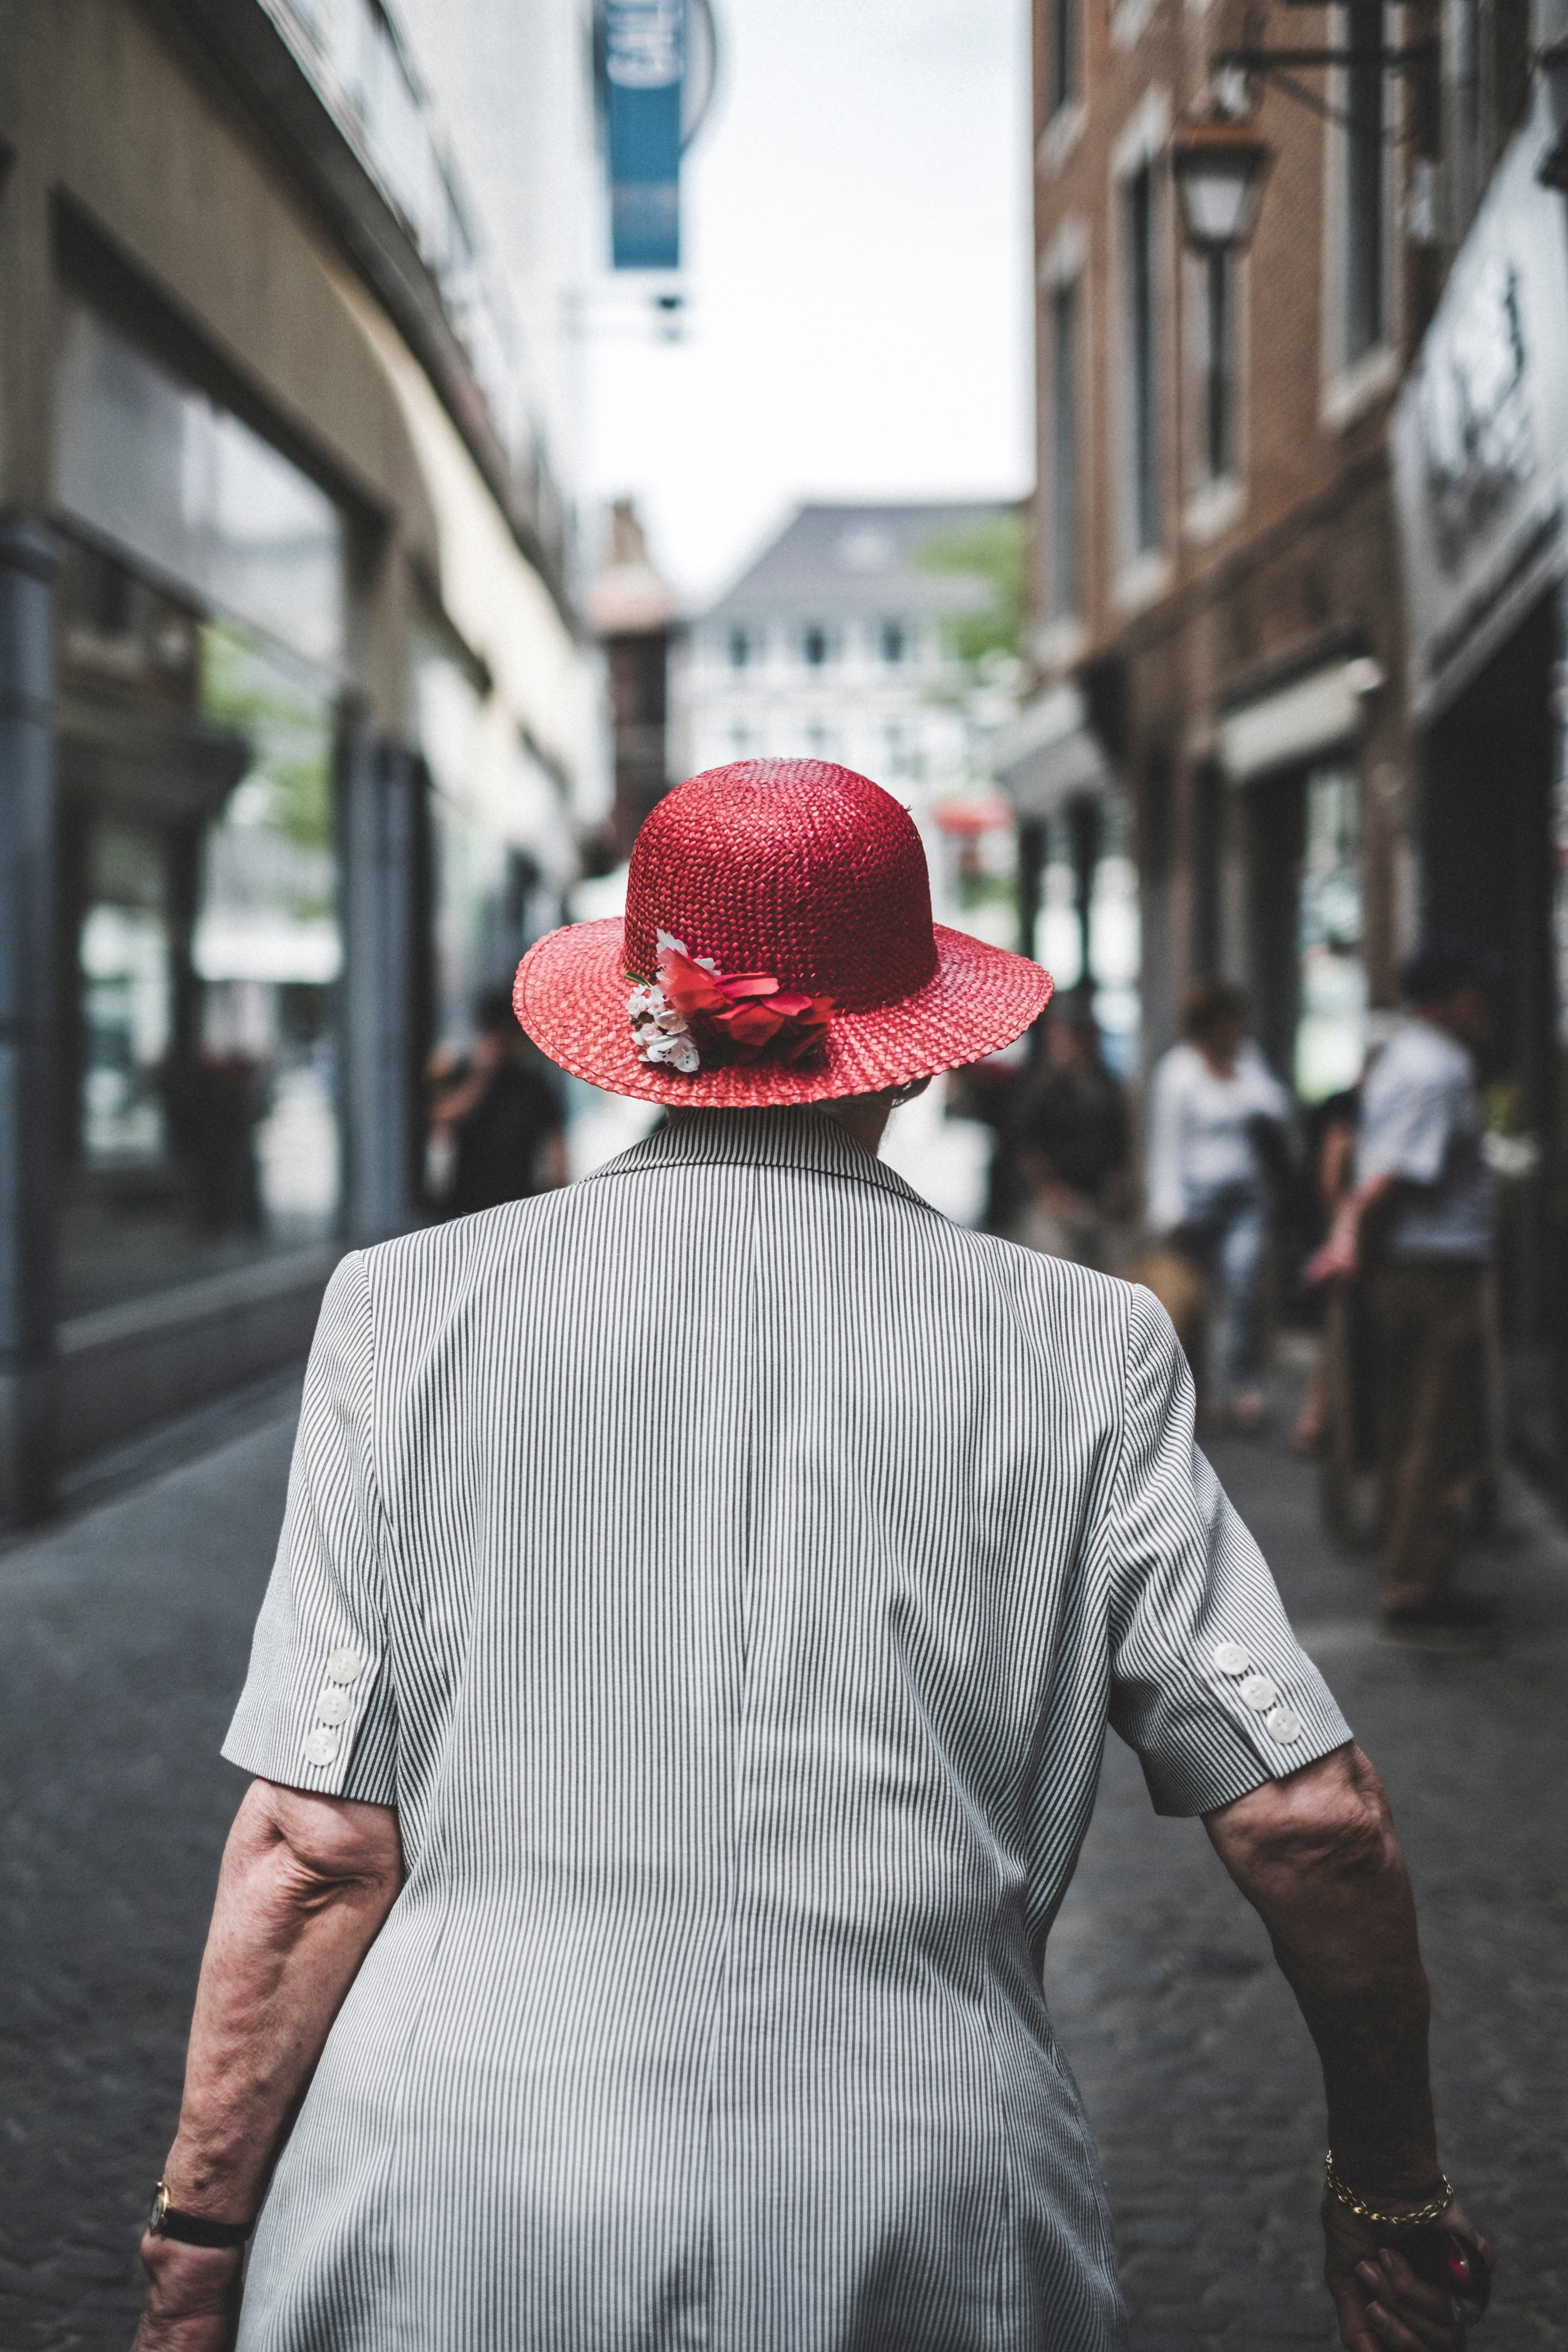 Une Grand-mère portant un chapeau de soleil rouge | Source : Unsplash